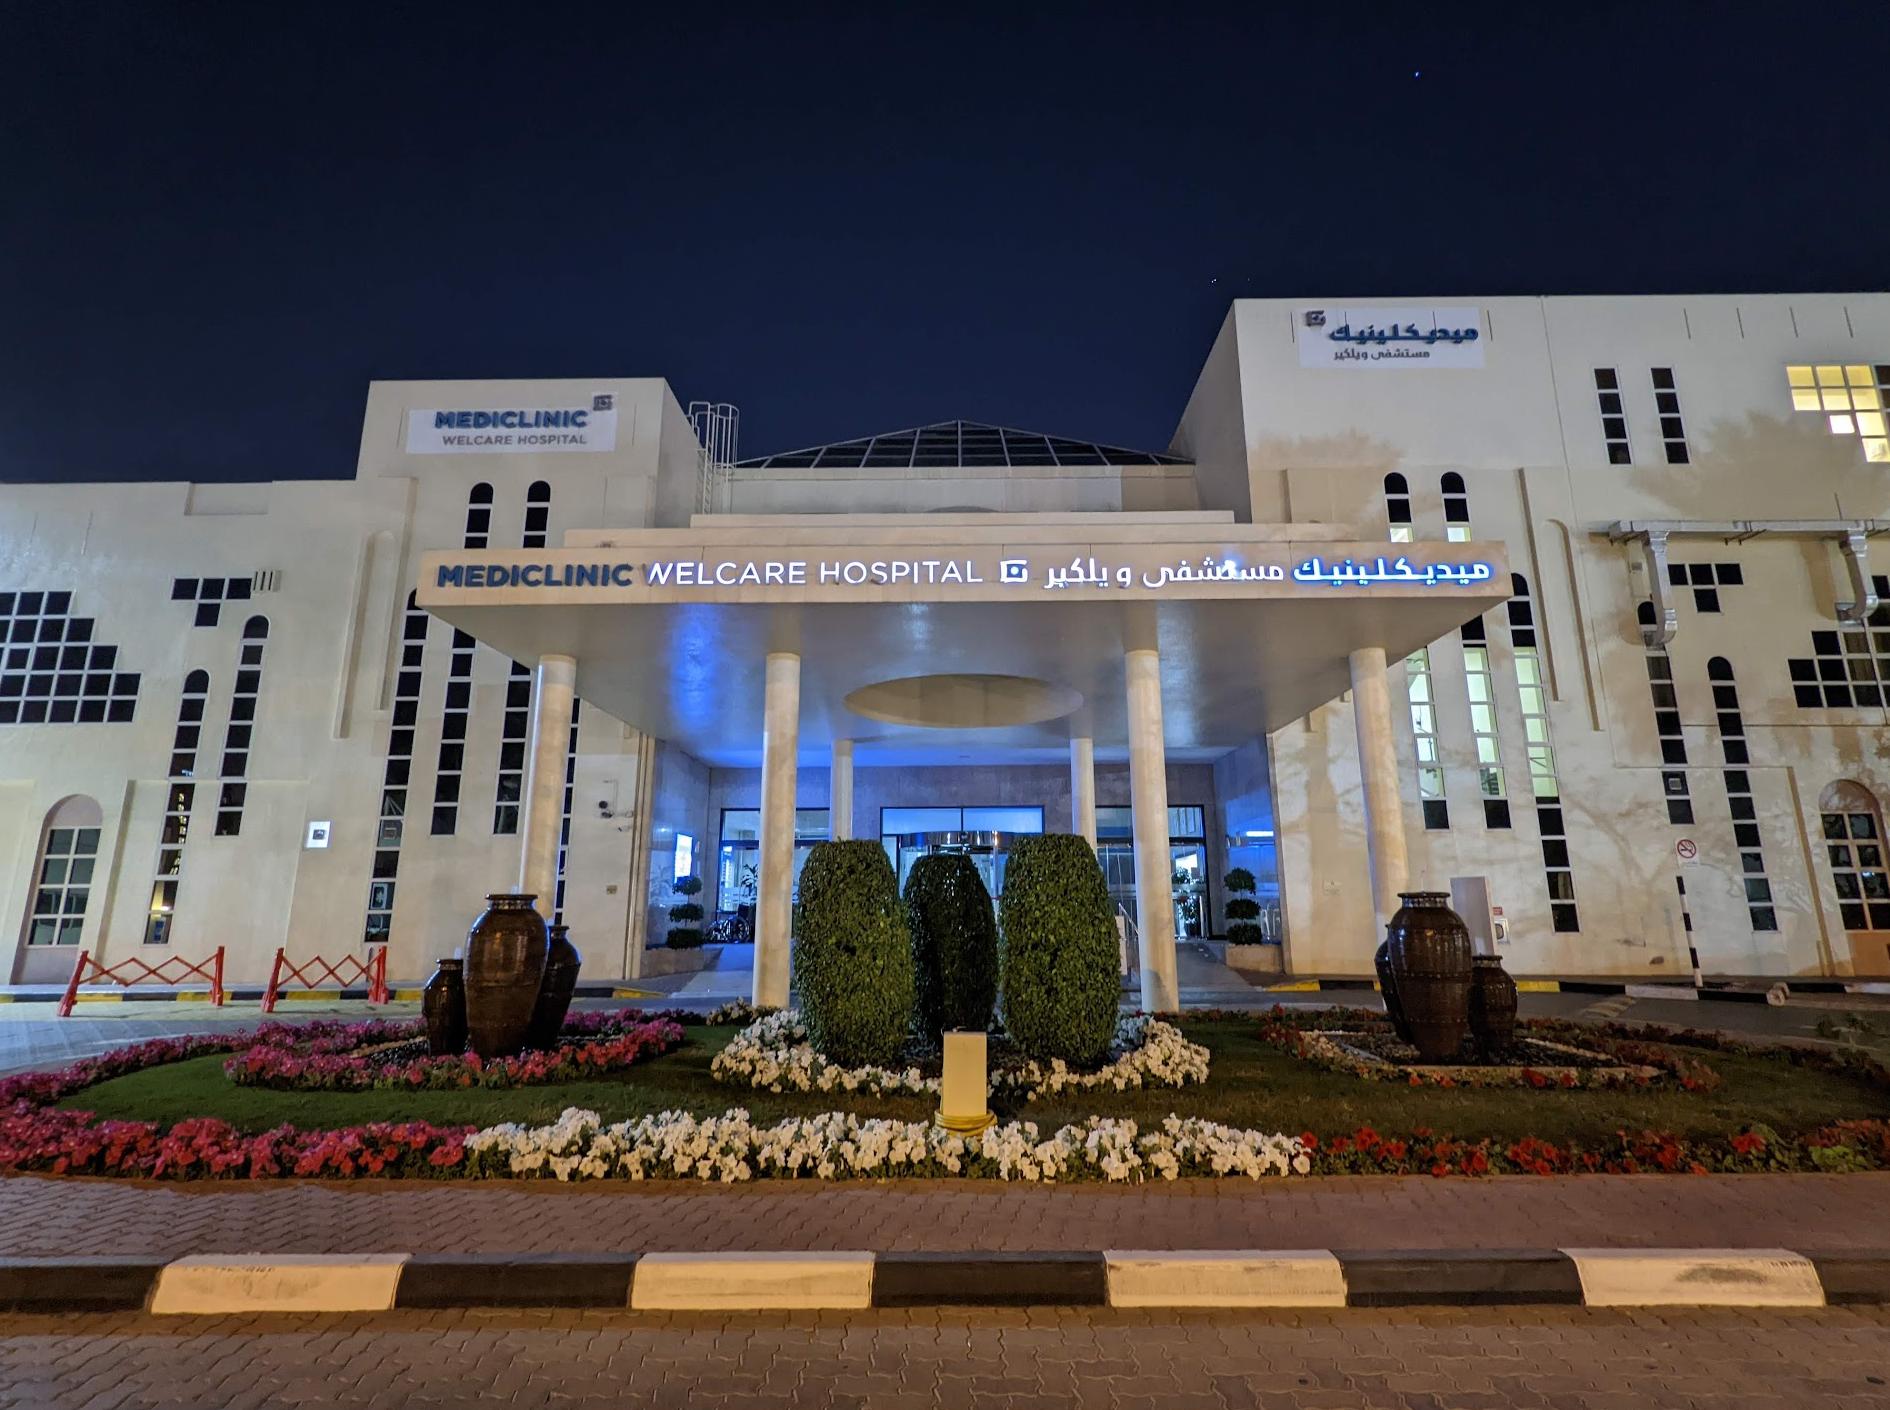 Hospital de Bienestar Mediclinic